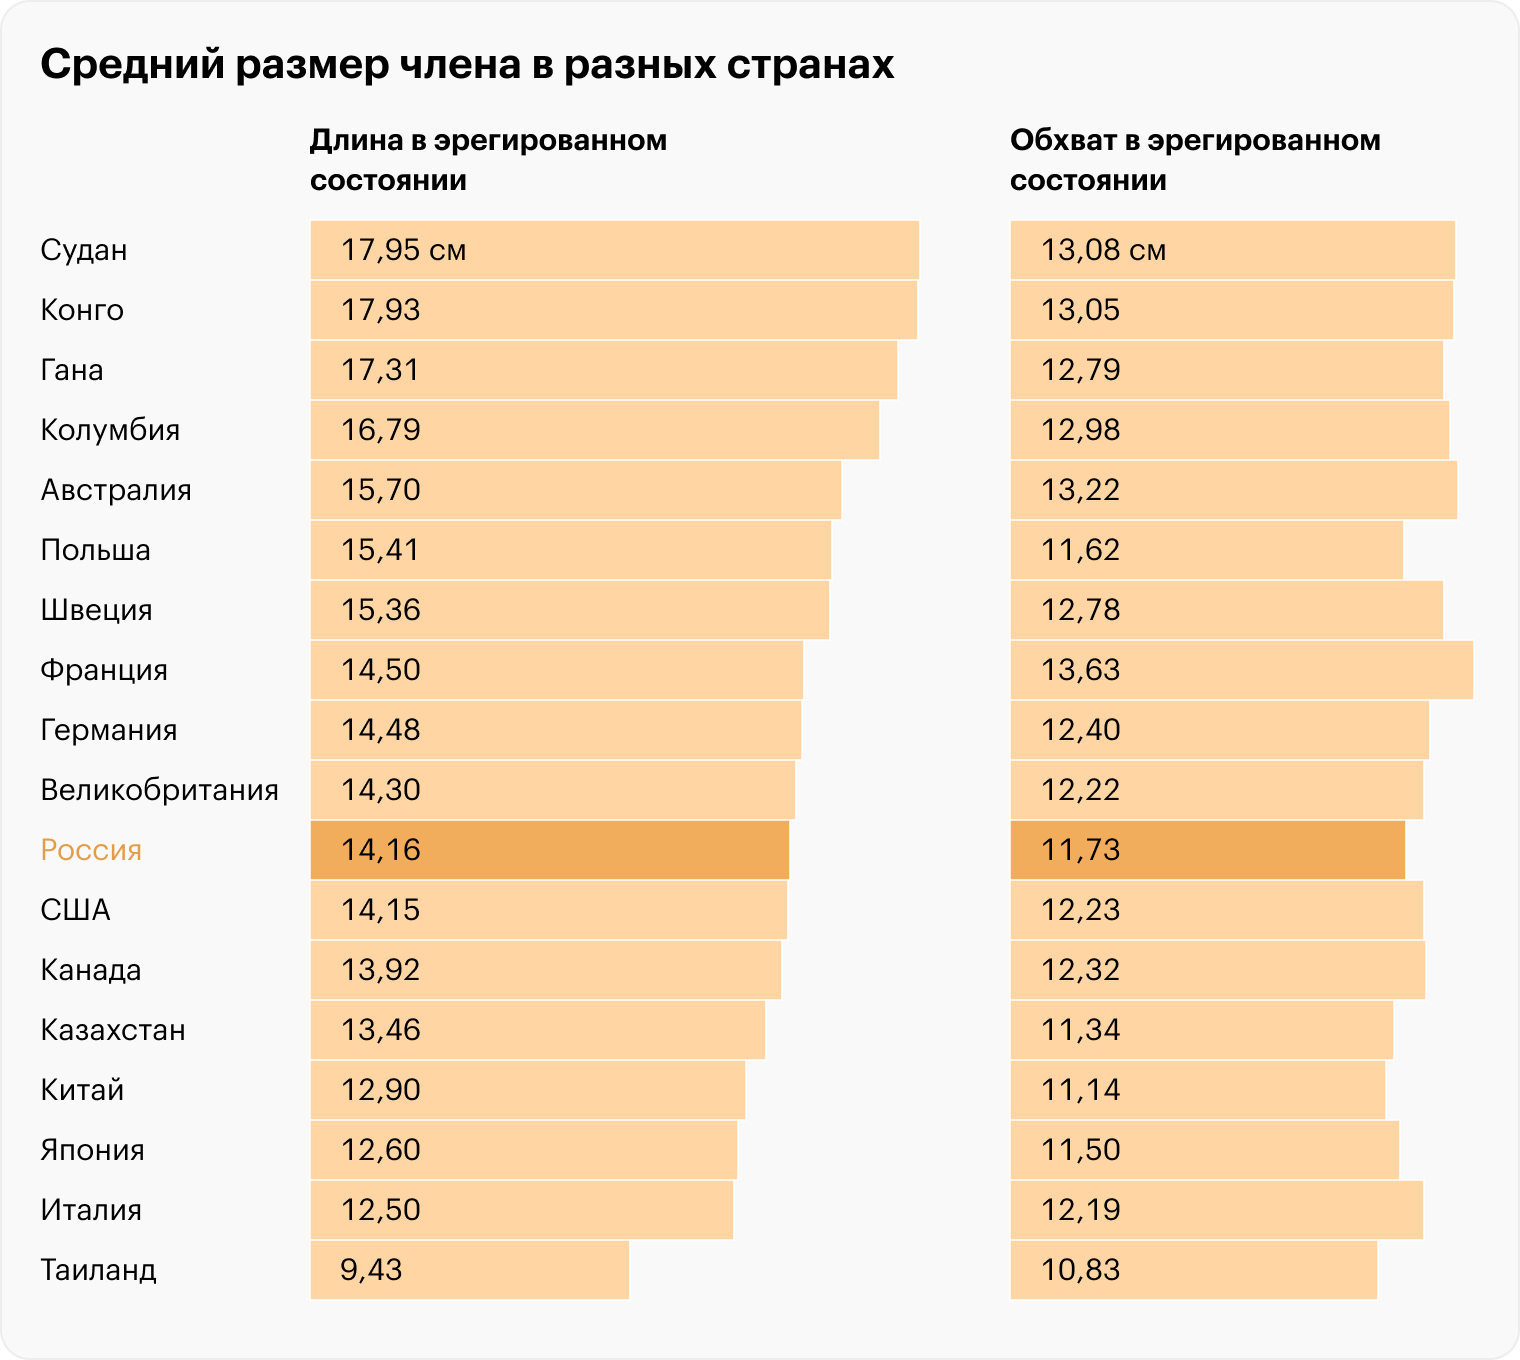 В рейтинге стран по среднему размеру пениса Россия примерно посередине — с 14,16 см в длине и 11,73 см в обхвате. Источник: worldpopulationreview.com